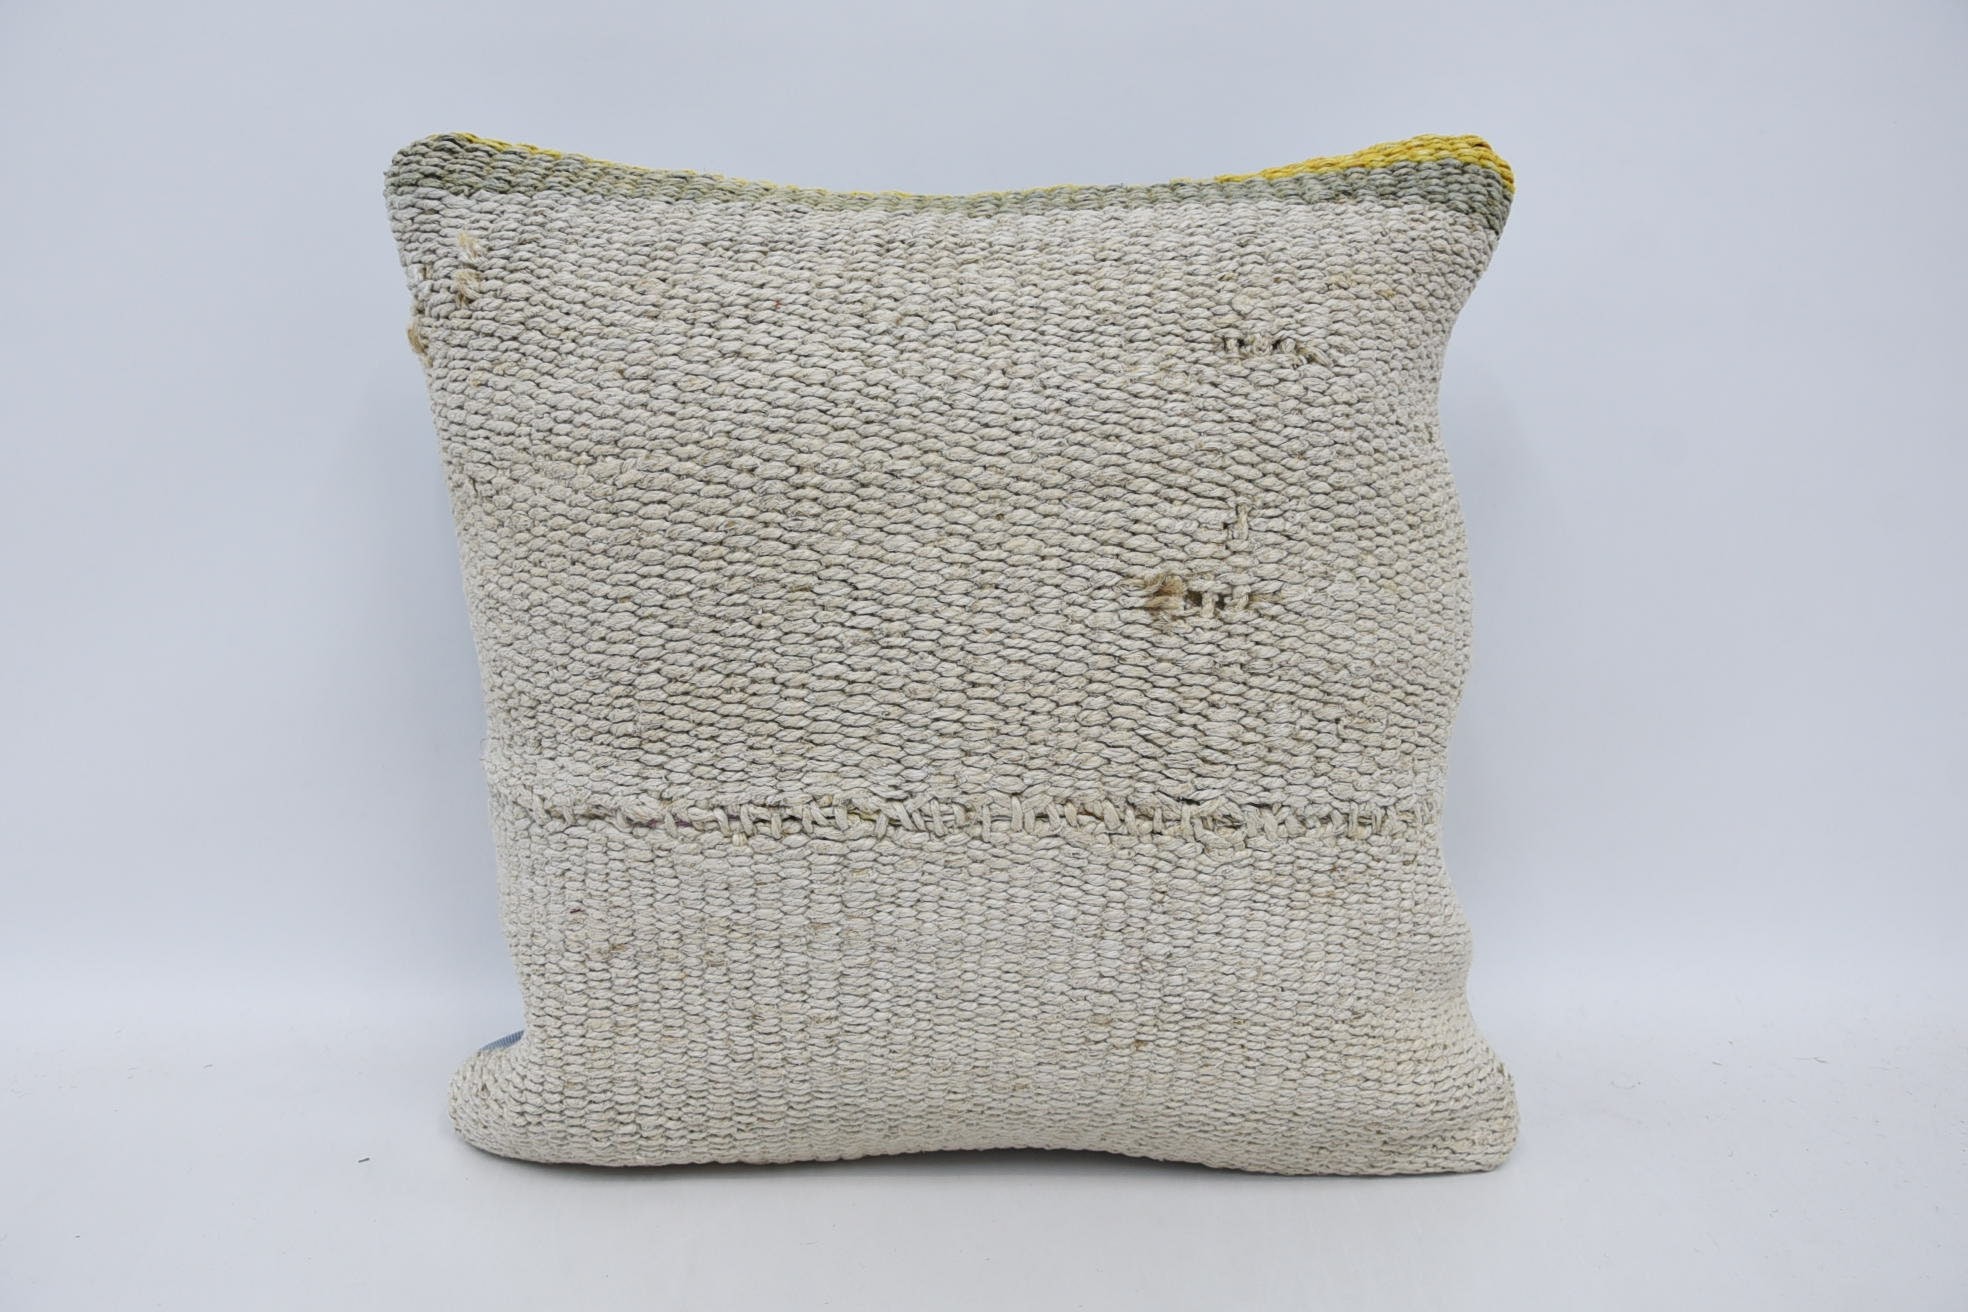 18"x18" White Pillow Case, Vintage Pillow Cover, Bolster Throw Cushion Cover, Kilim Cushion Sham, Turkish Kilim Pillow, Antique Pillows